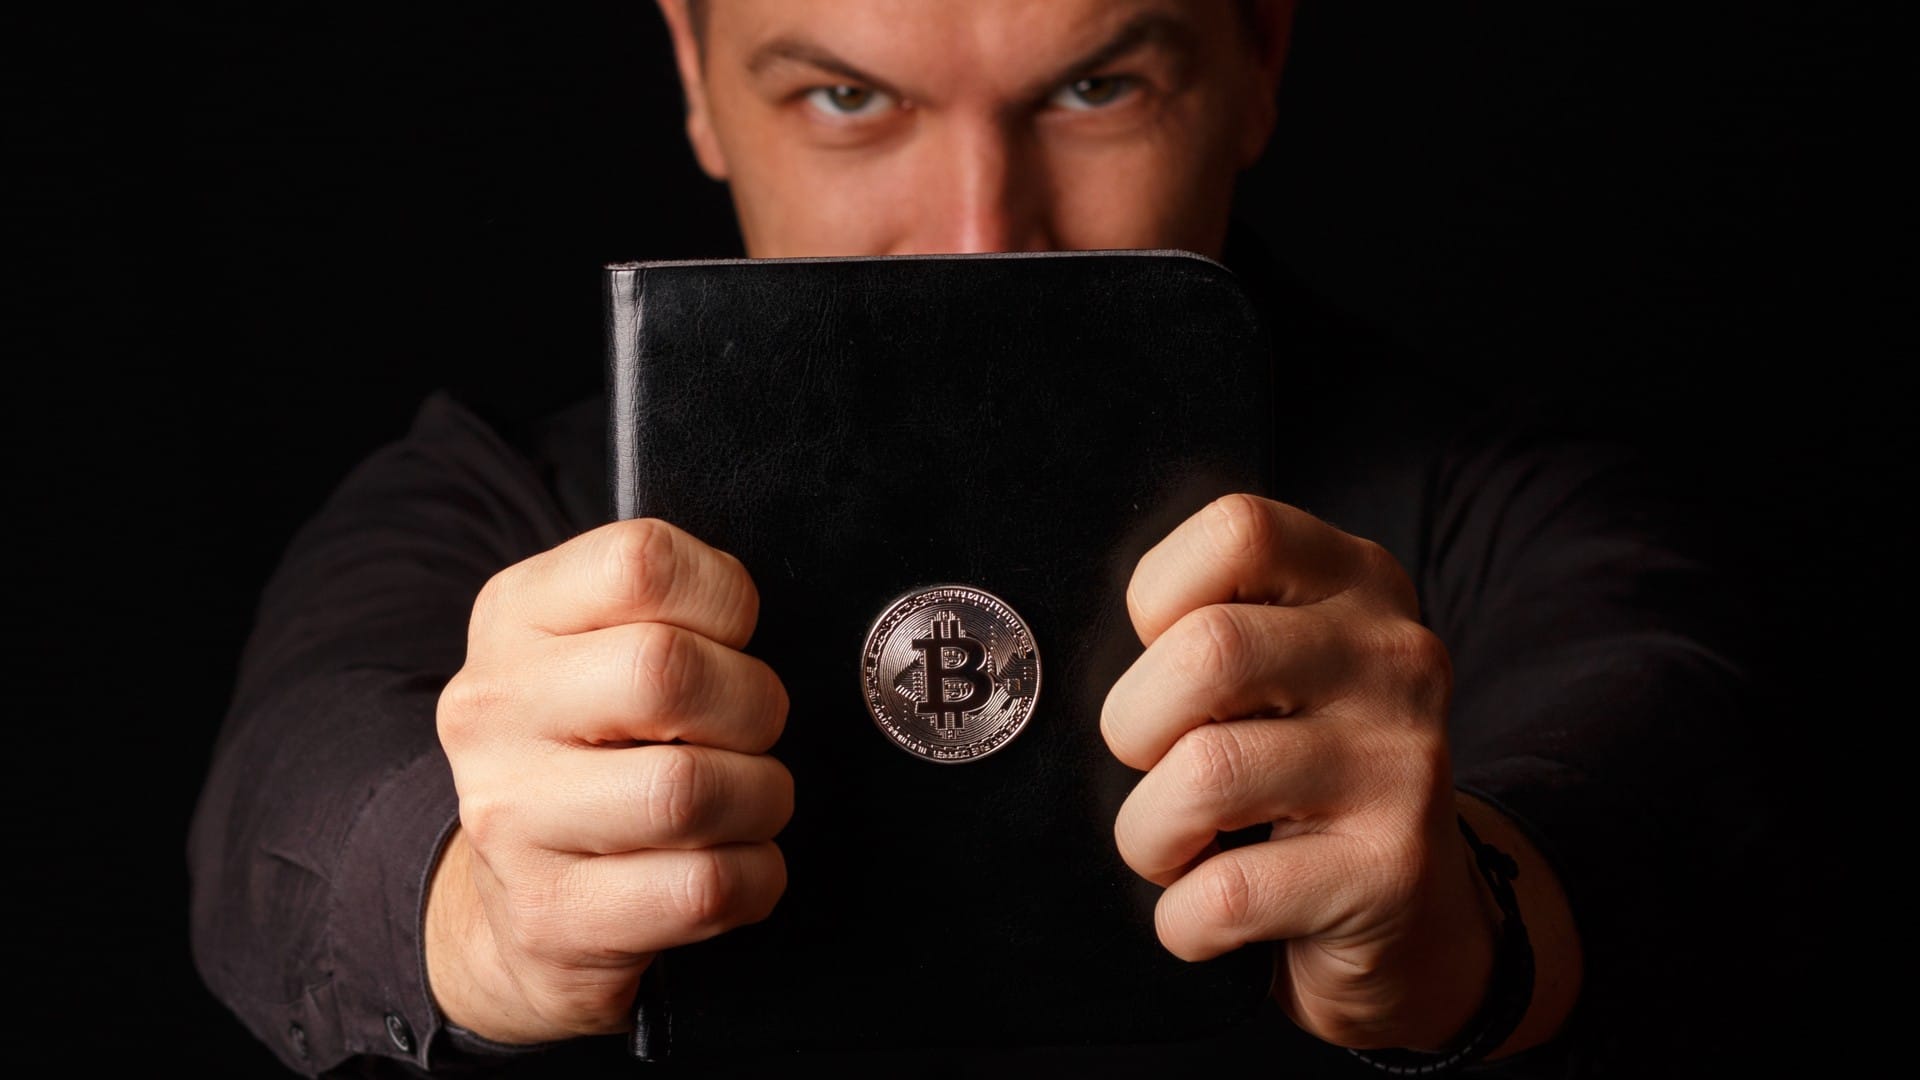 Desempregado perdeu acerto após investir na empresa do “Pastor do Bitcoin”